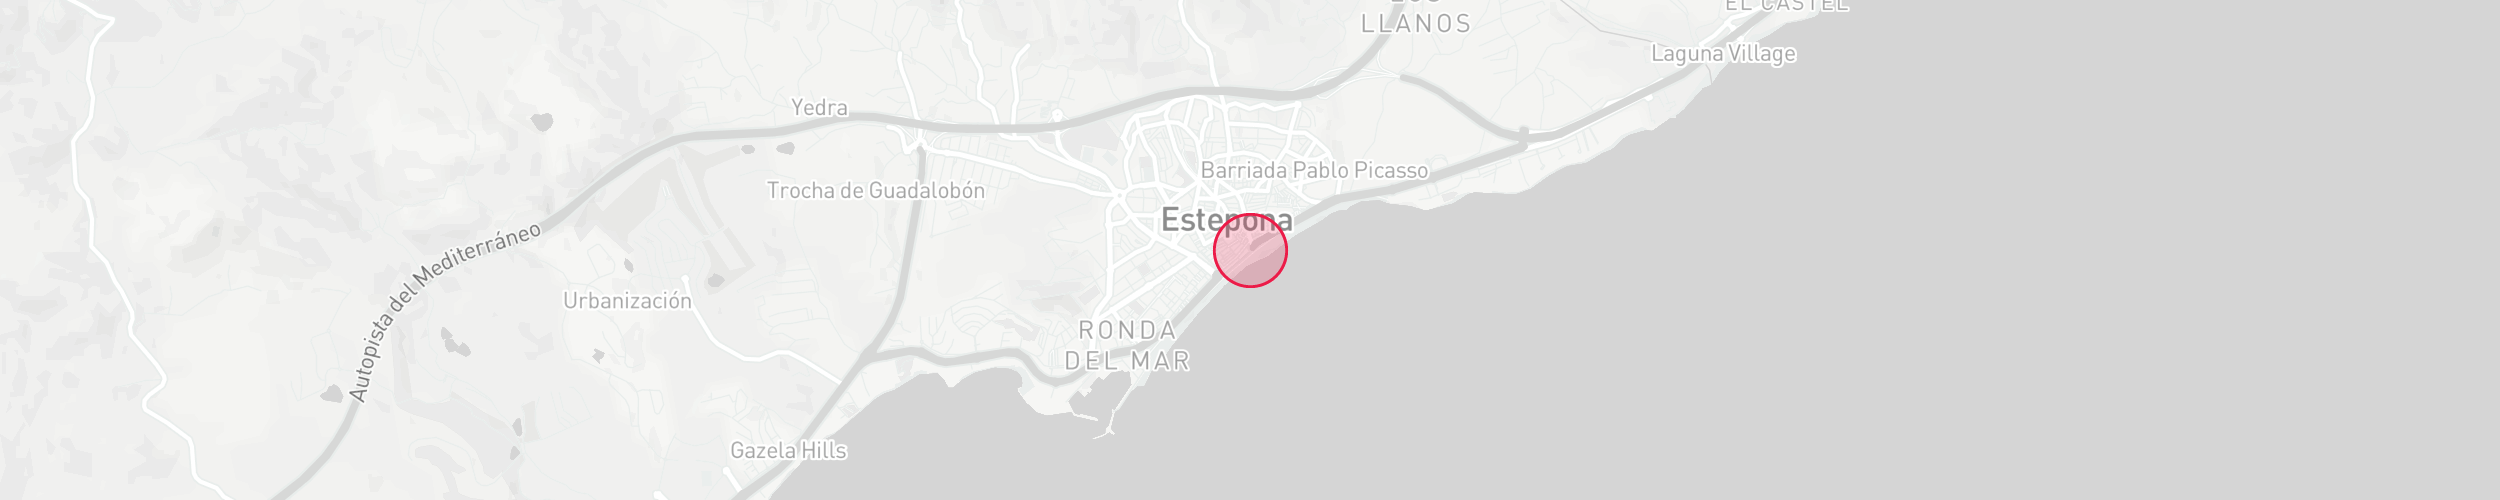 Mapa de localización de la propiedad - Estepona